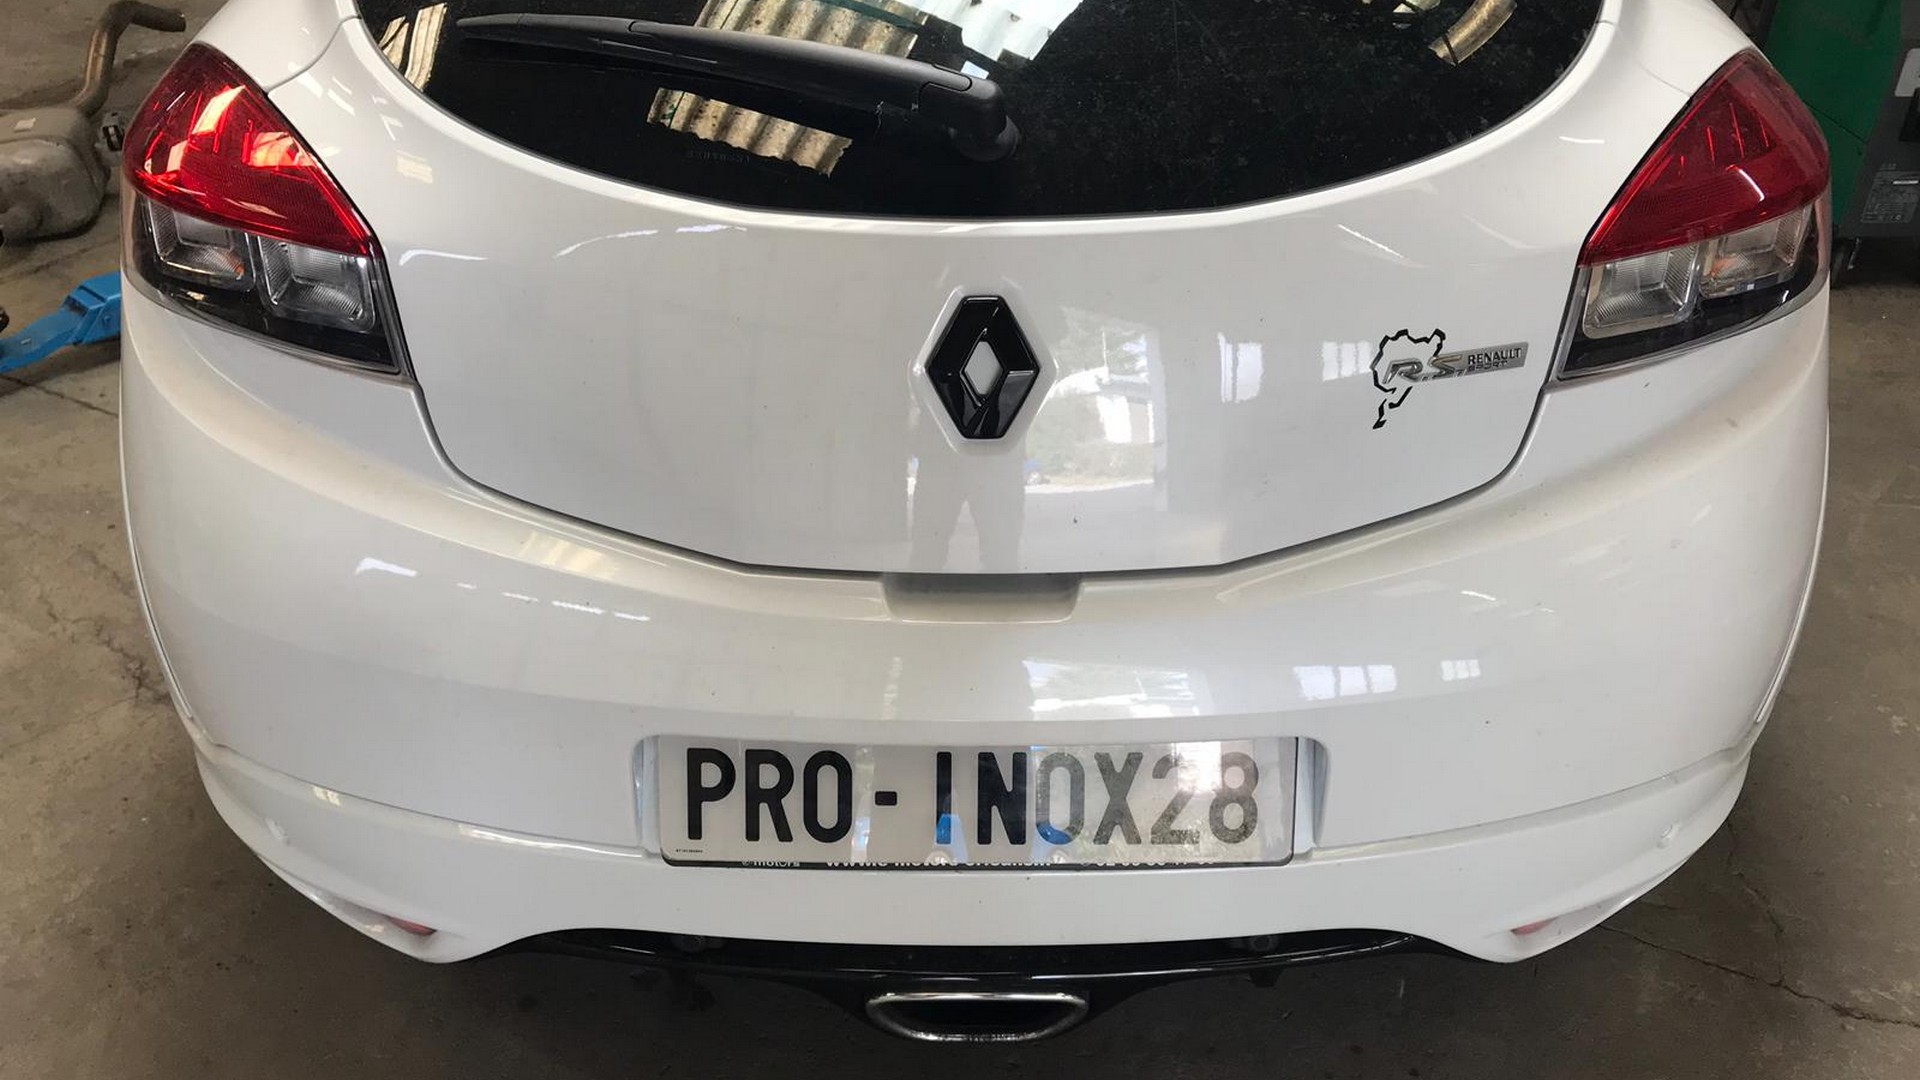 Proinox28- Échappement Renault Megane 4 RS